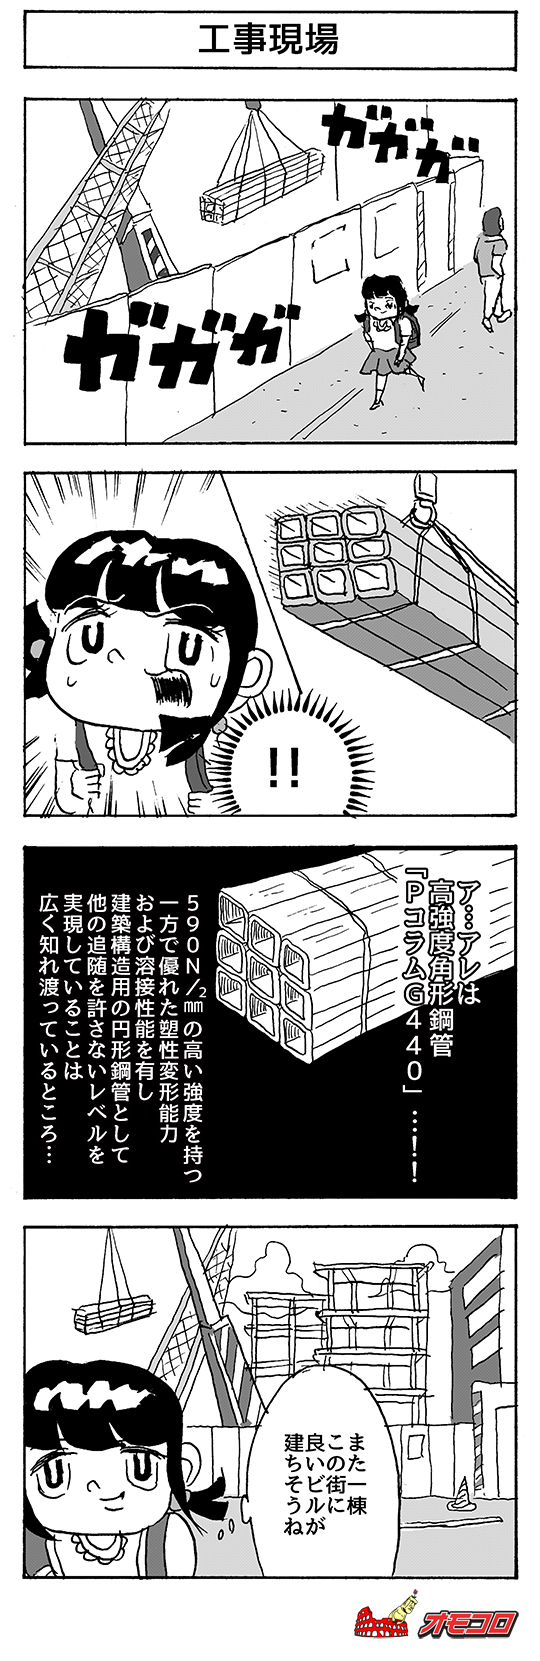 【4コマ漫画】工事現場